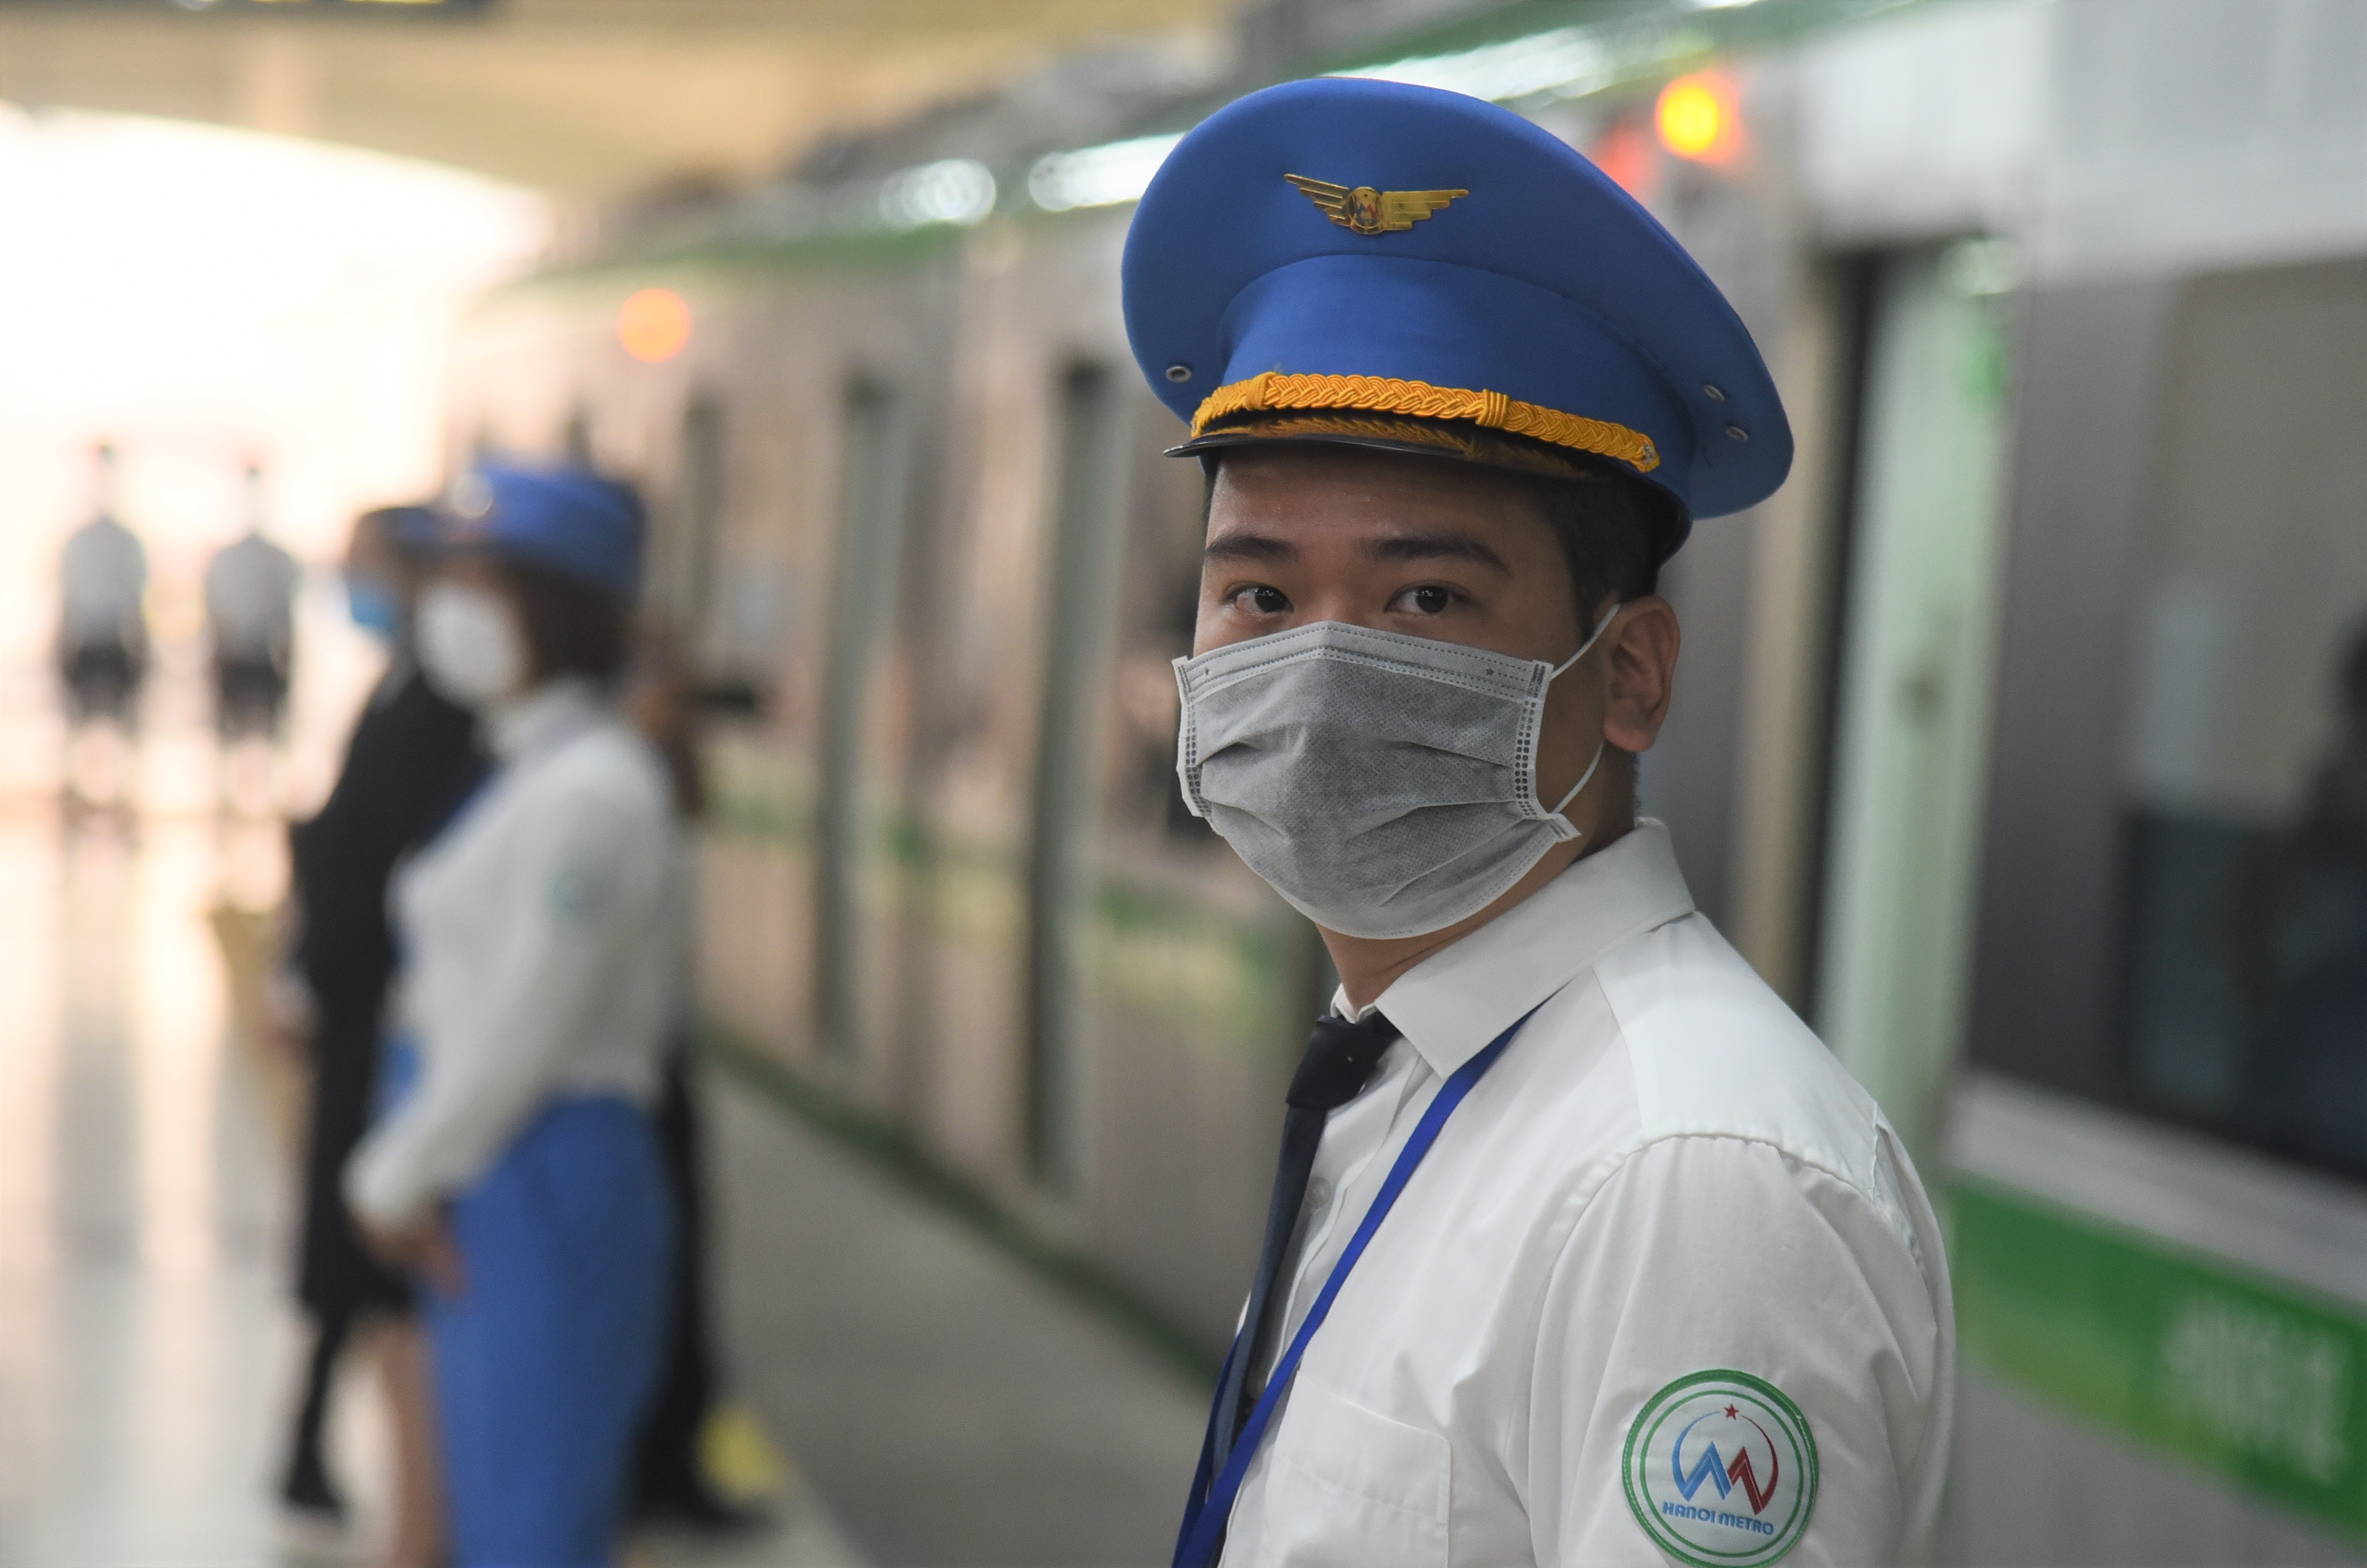 Khi chưa có rào chắn ke ga, Hanoi Metro cử người cảnh giới để đảm bảo an toàn. Ảnh: Ngọc Tân.